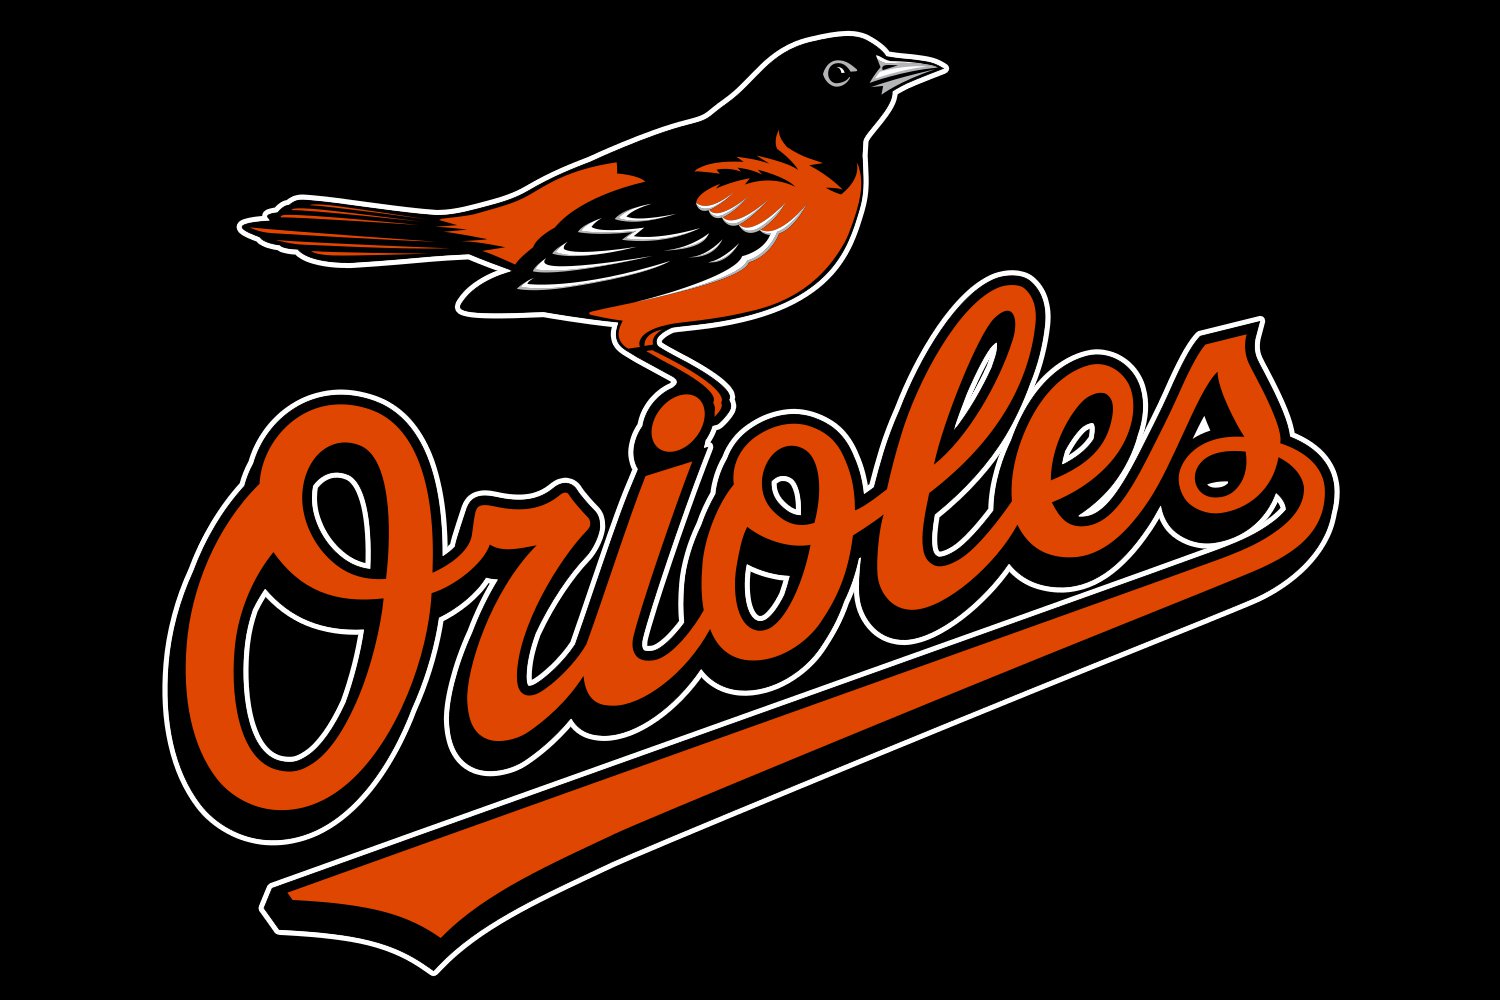 Orioles Logo Redesign - Concepts  Logo redesign, Orioles logo, Graphic  design logo